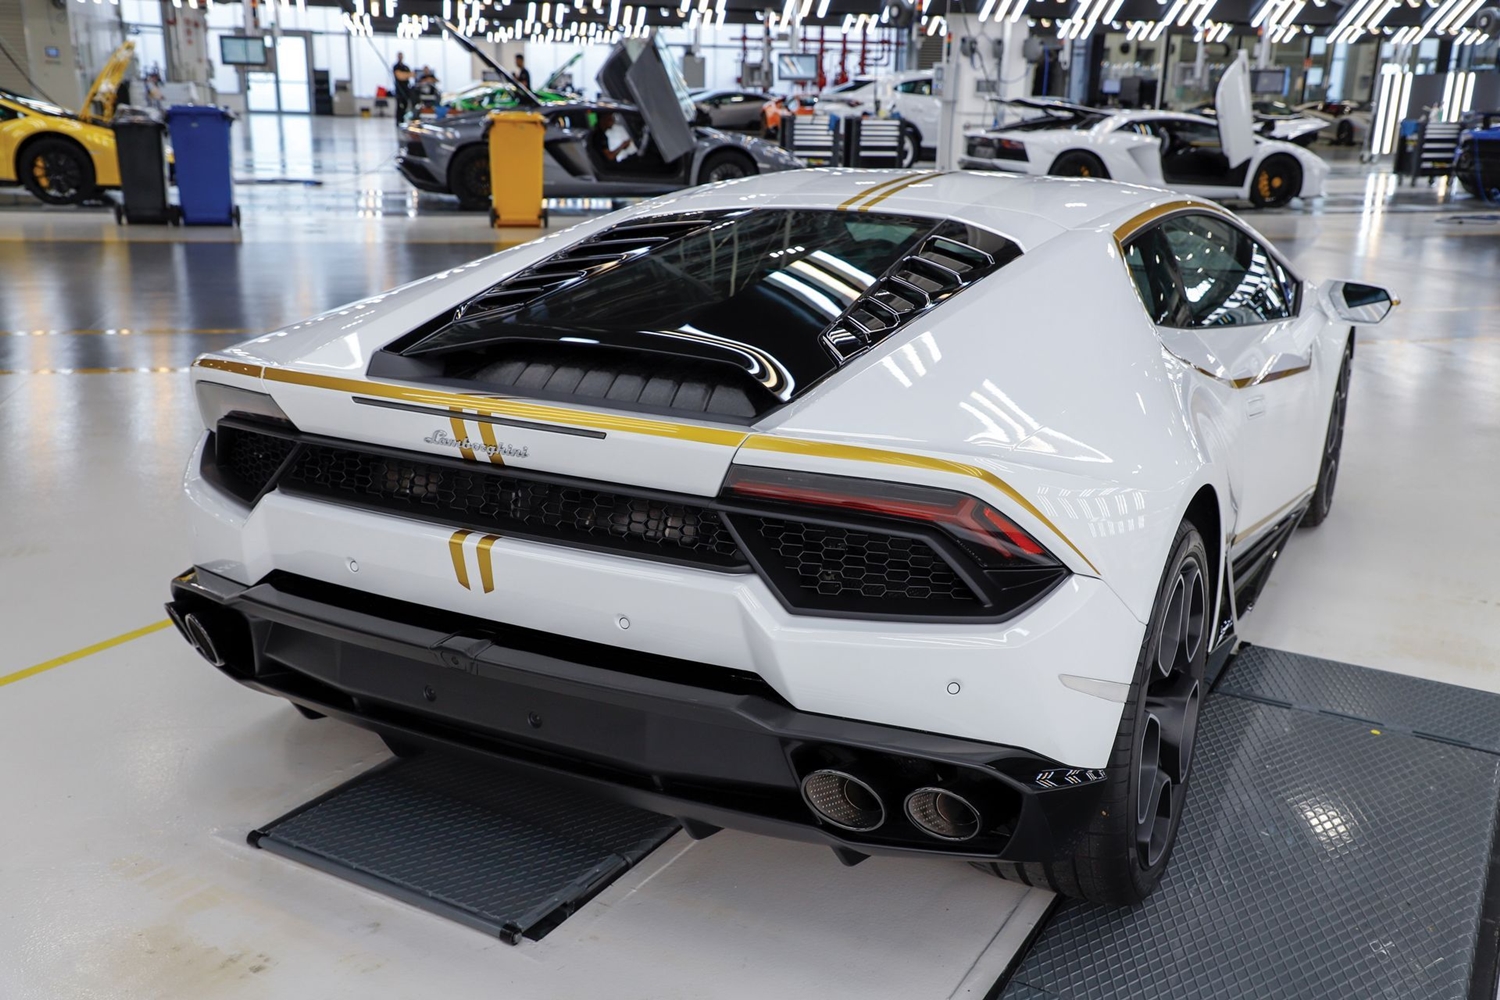 Már nem sokáig marad a pápáé ez a gyönyörű Lamborghini 3